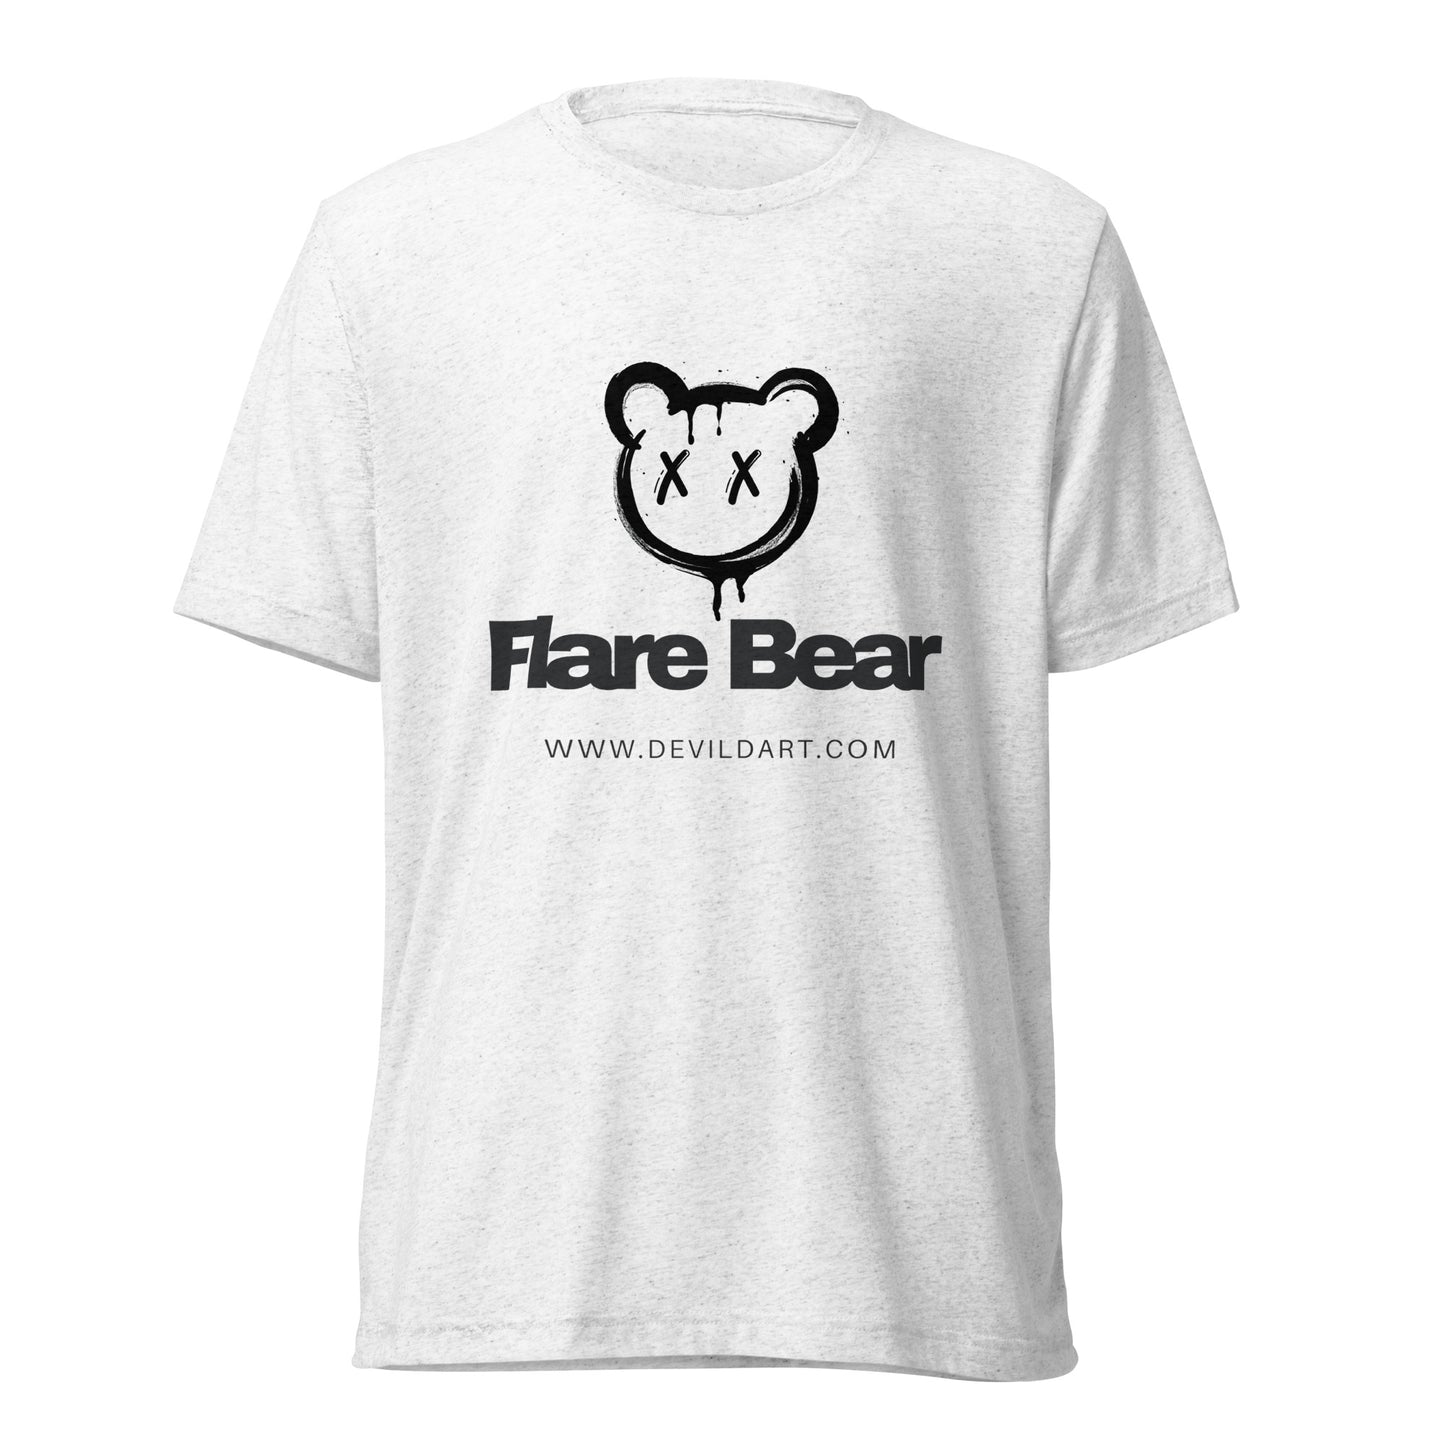 Flare Bear